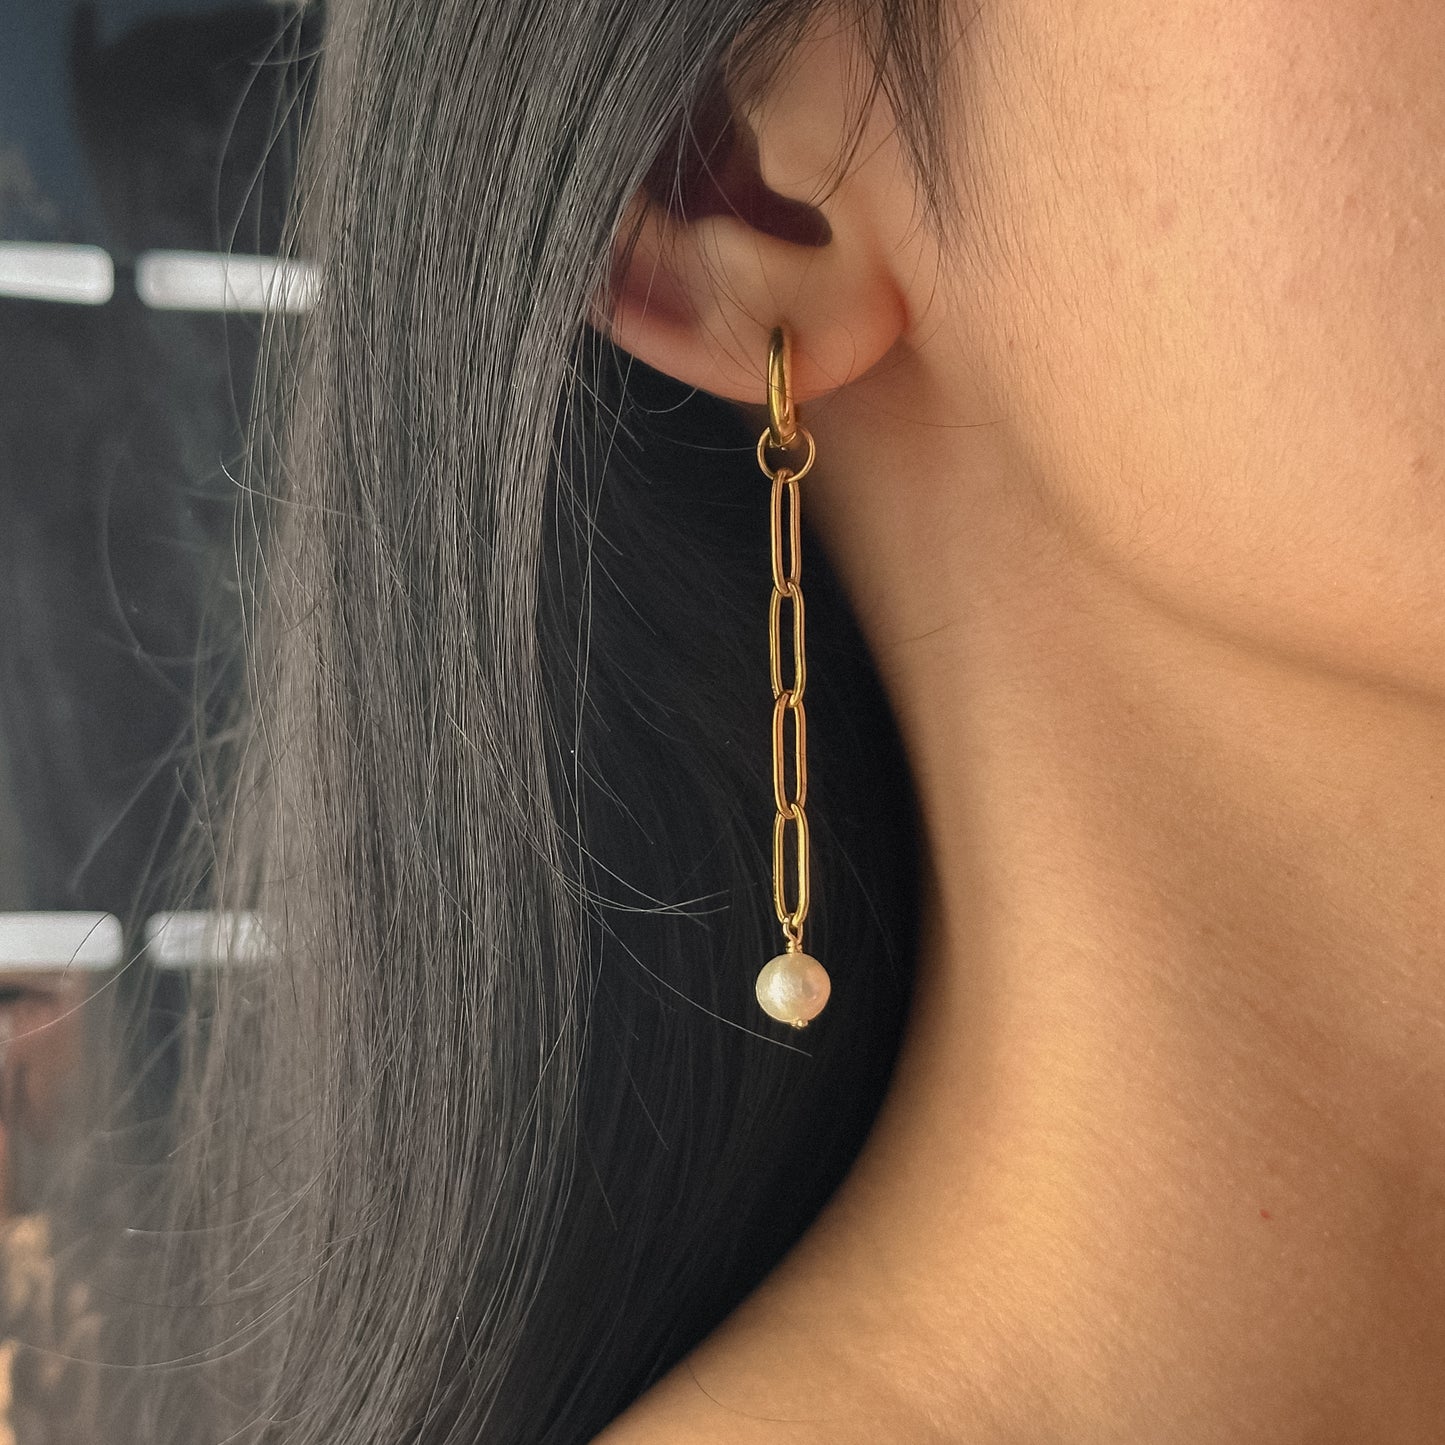 Fortaleza earrings